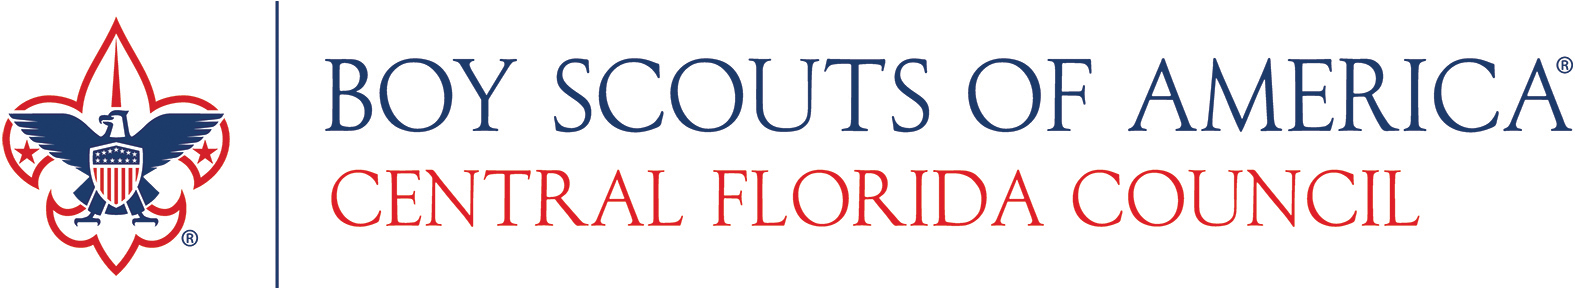 BoyScouts Counci Logo